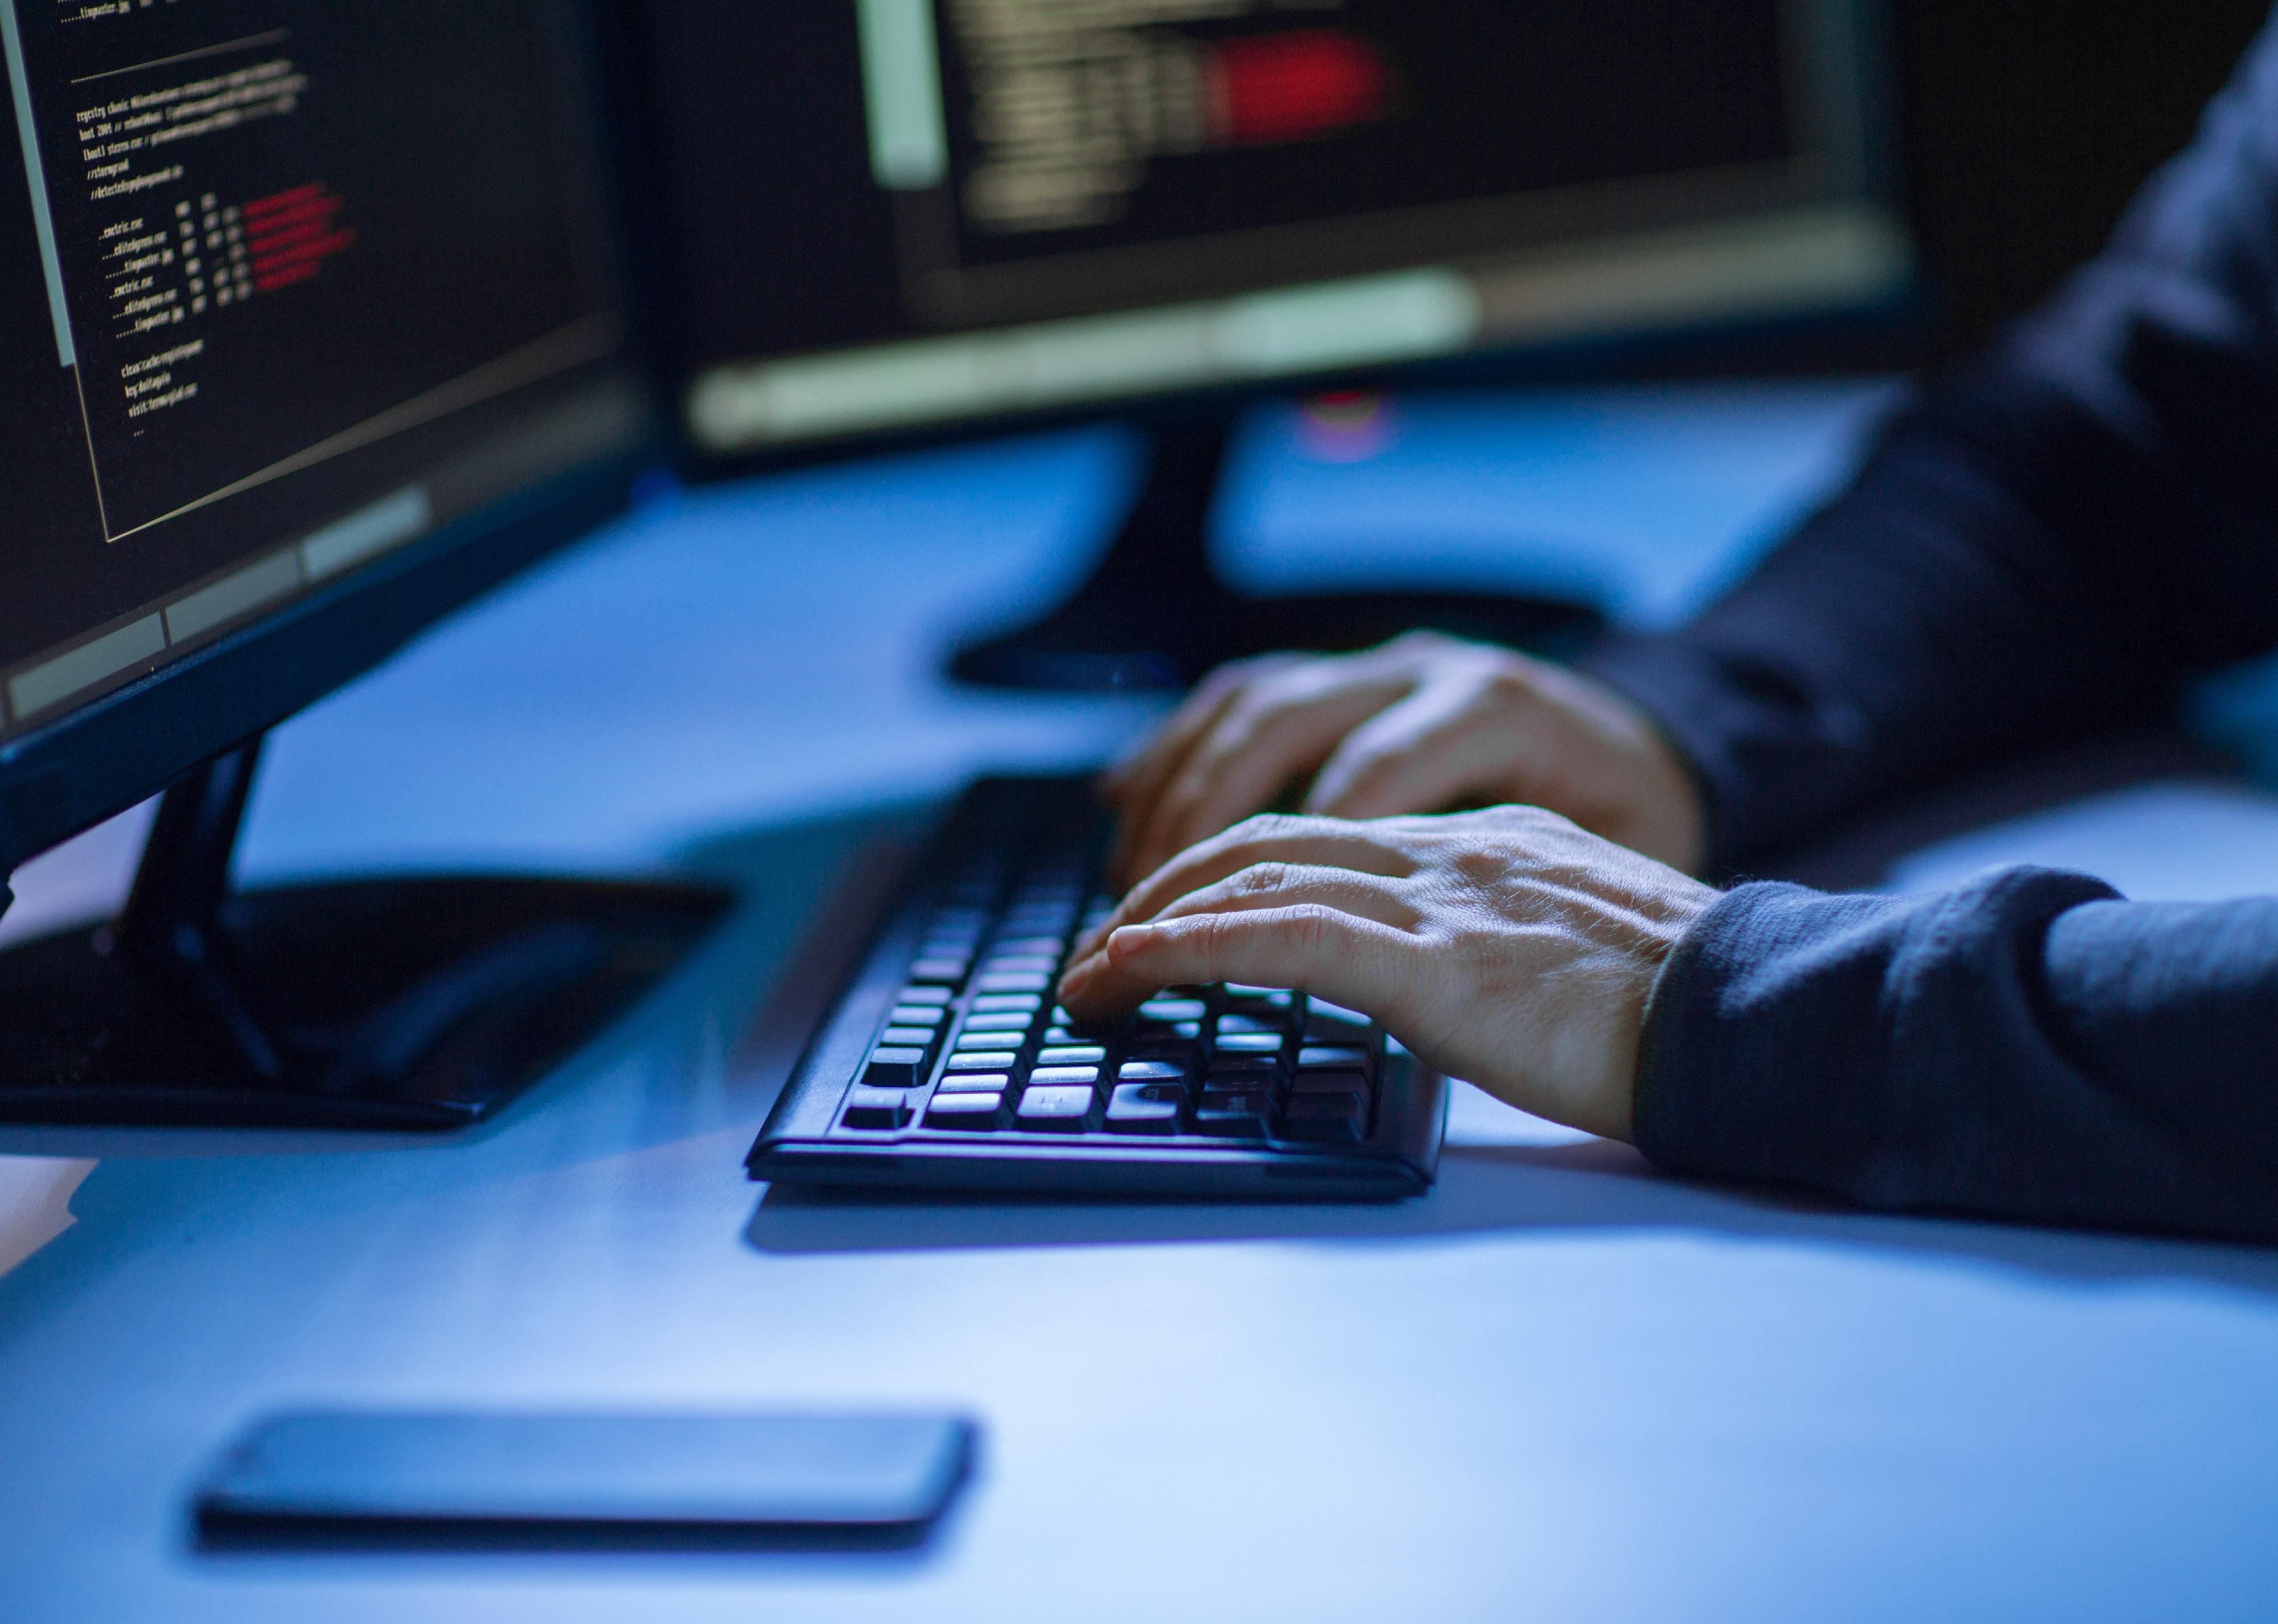 Hands of hacker in dark room using computer